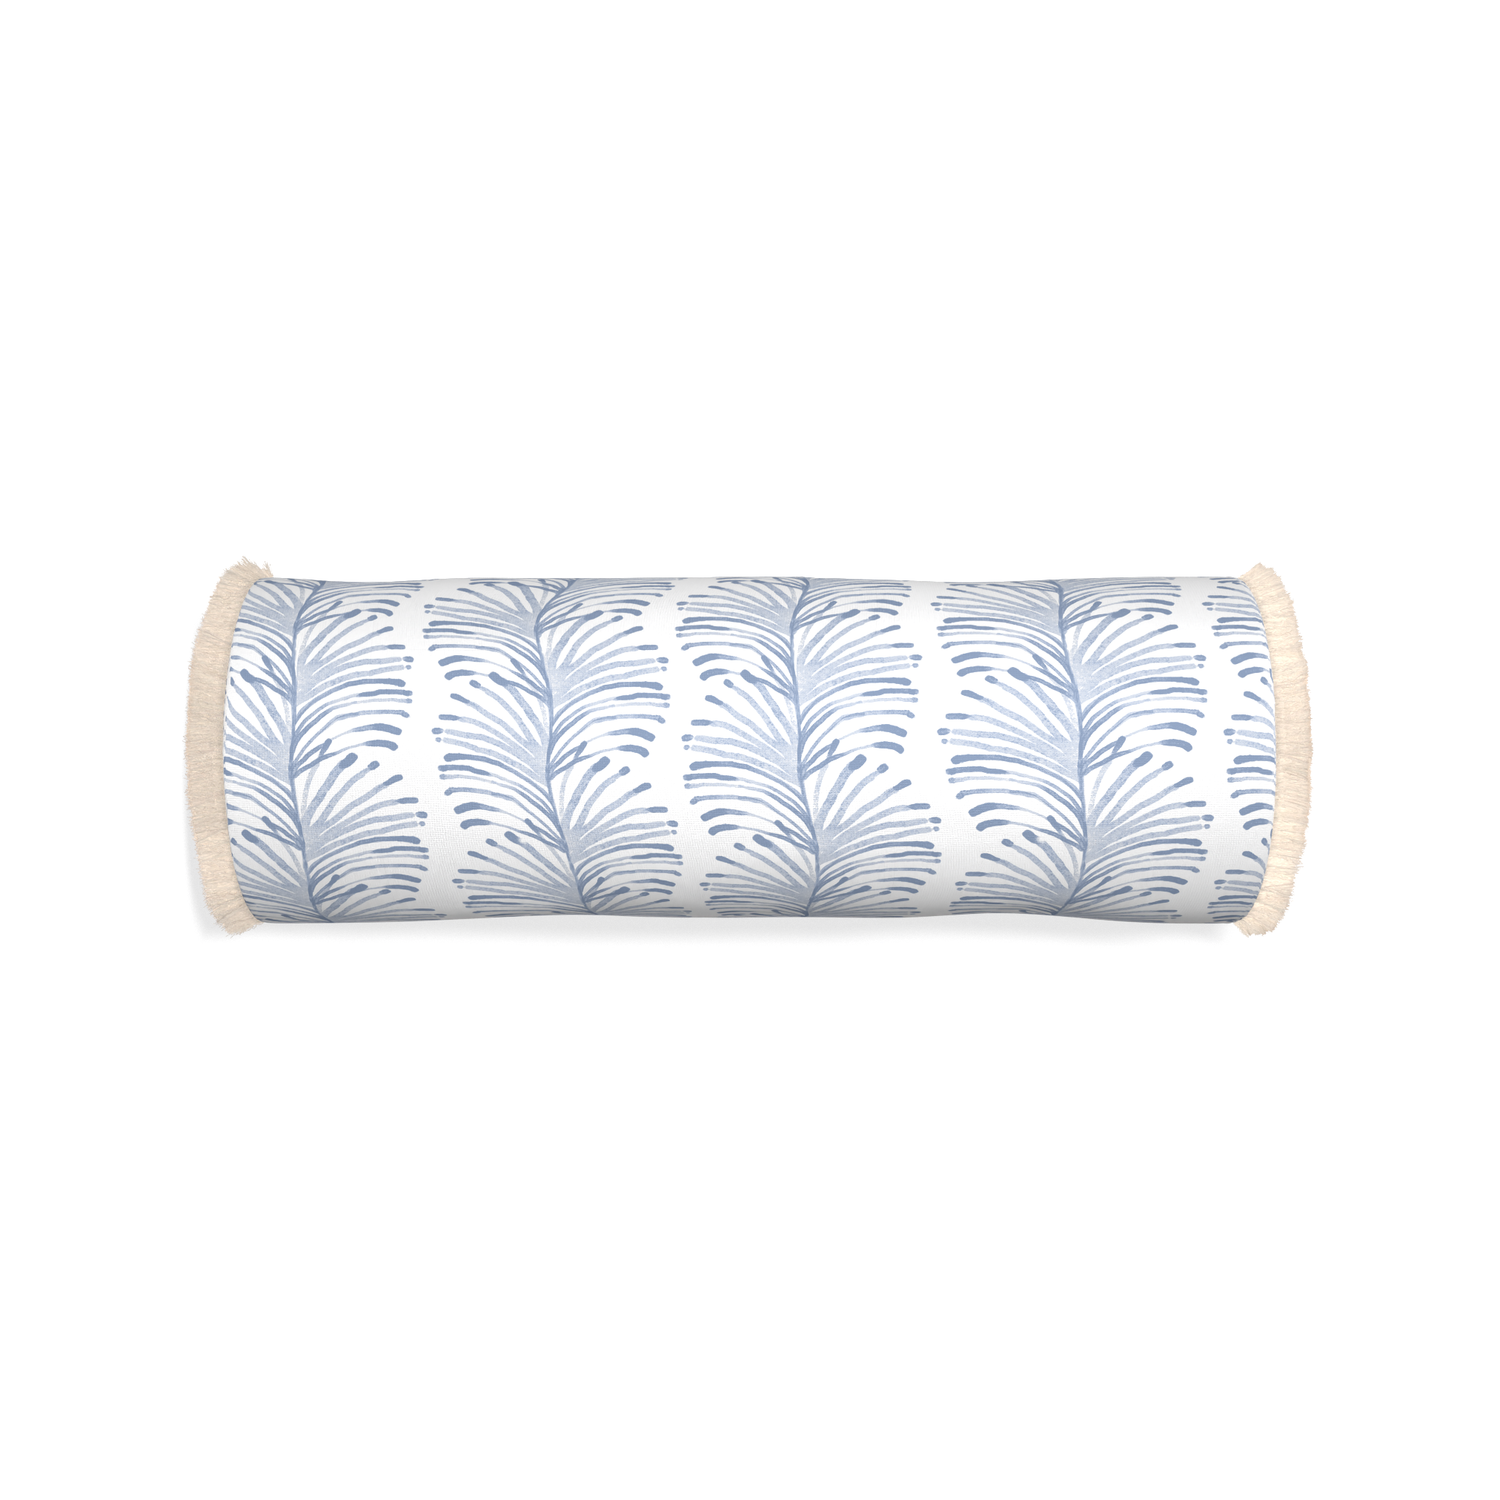 Bolster emma sky custom sky blue botanical stripepillow with cream fringe on white background